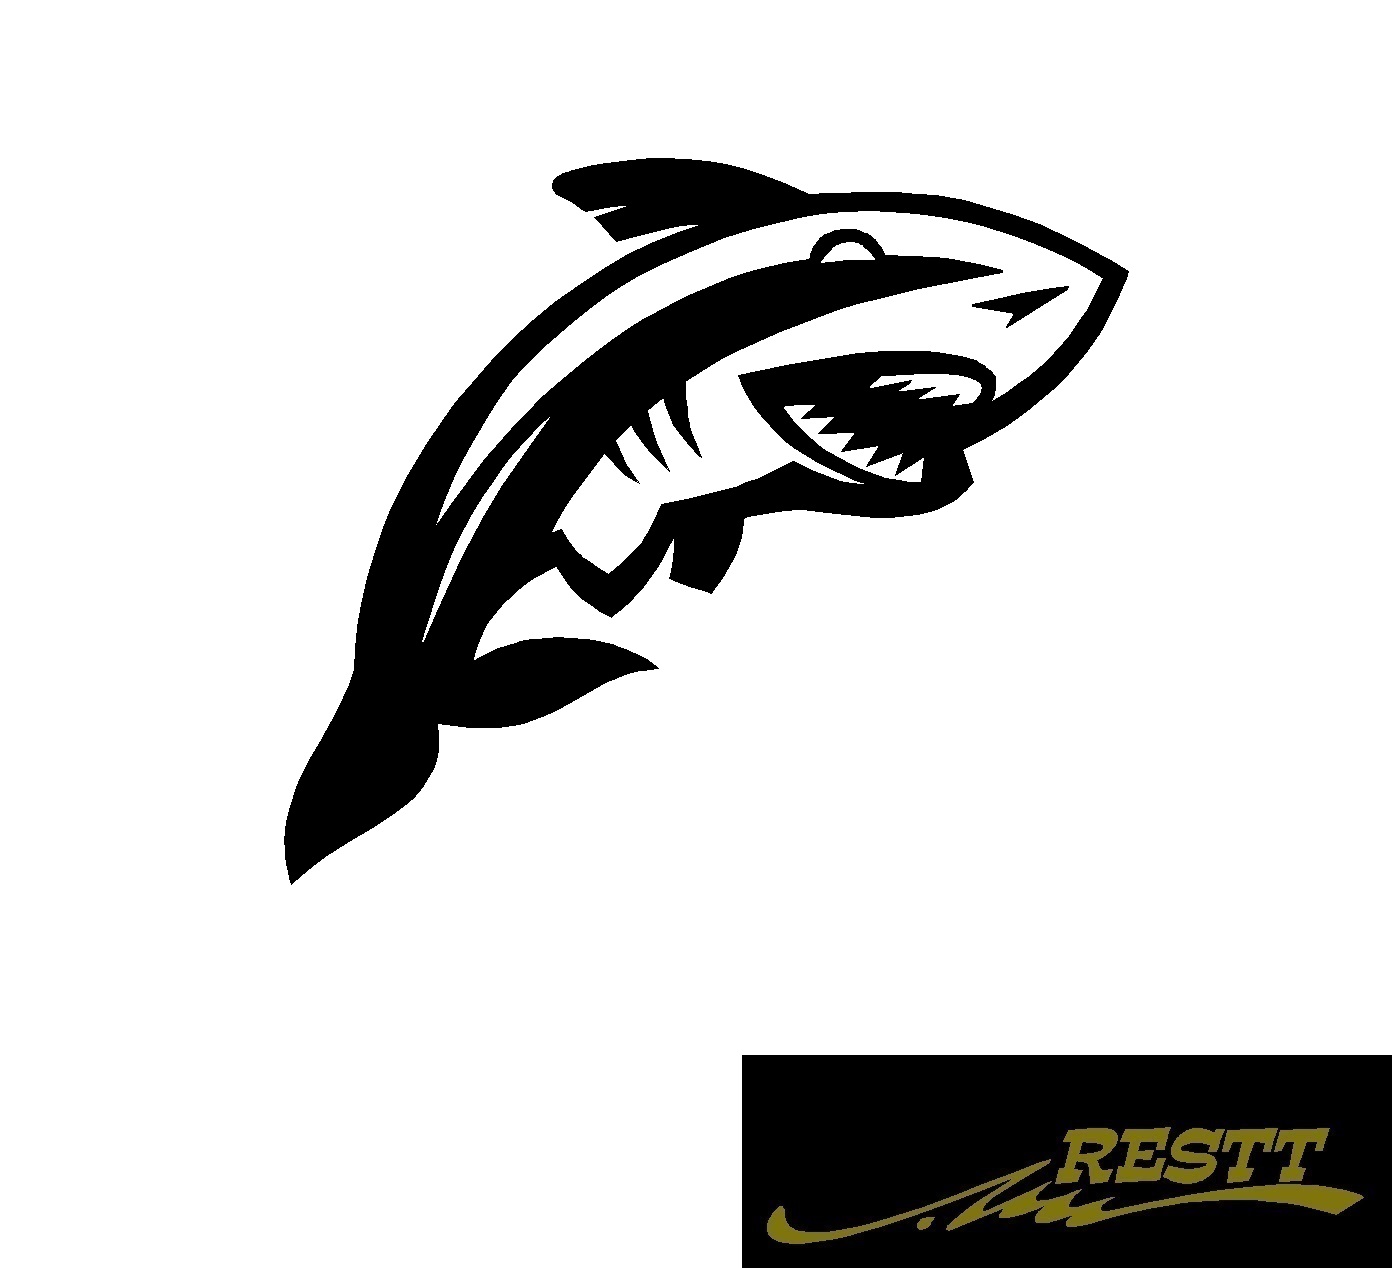 豊富なカラー色から作成かっこいい鮫デザインおしゃれなステッカー サメ イラスト 中サイズ ロゴ カッティングステッカー 希望者のみラッピング無料